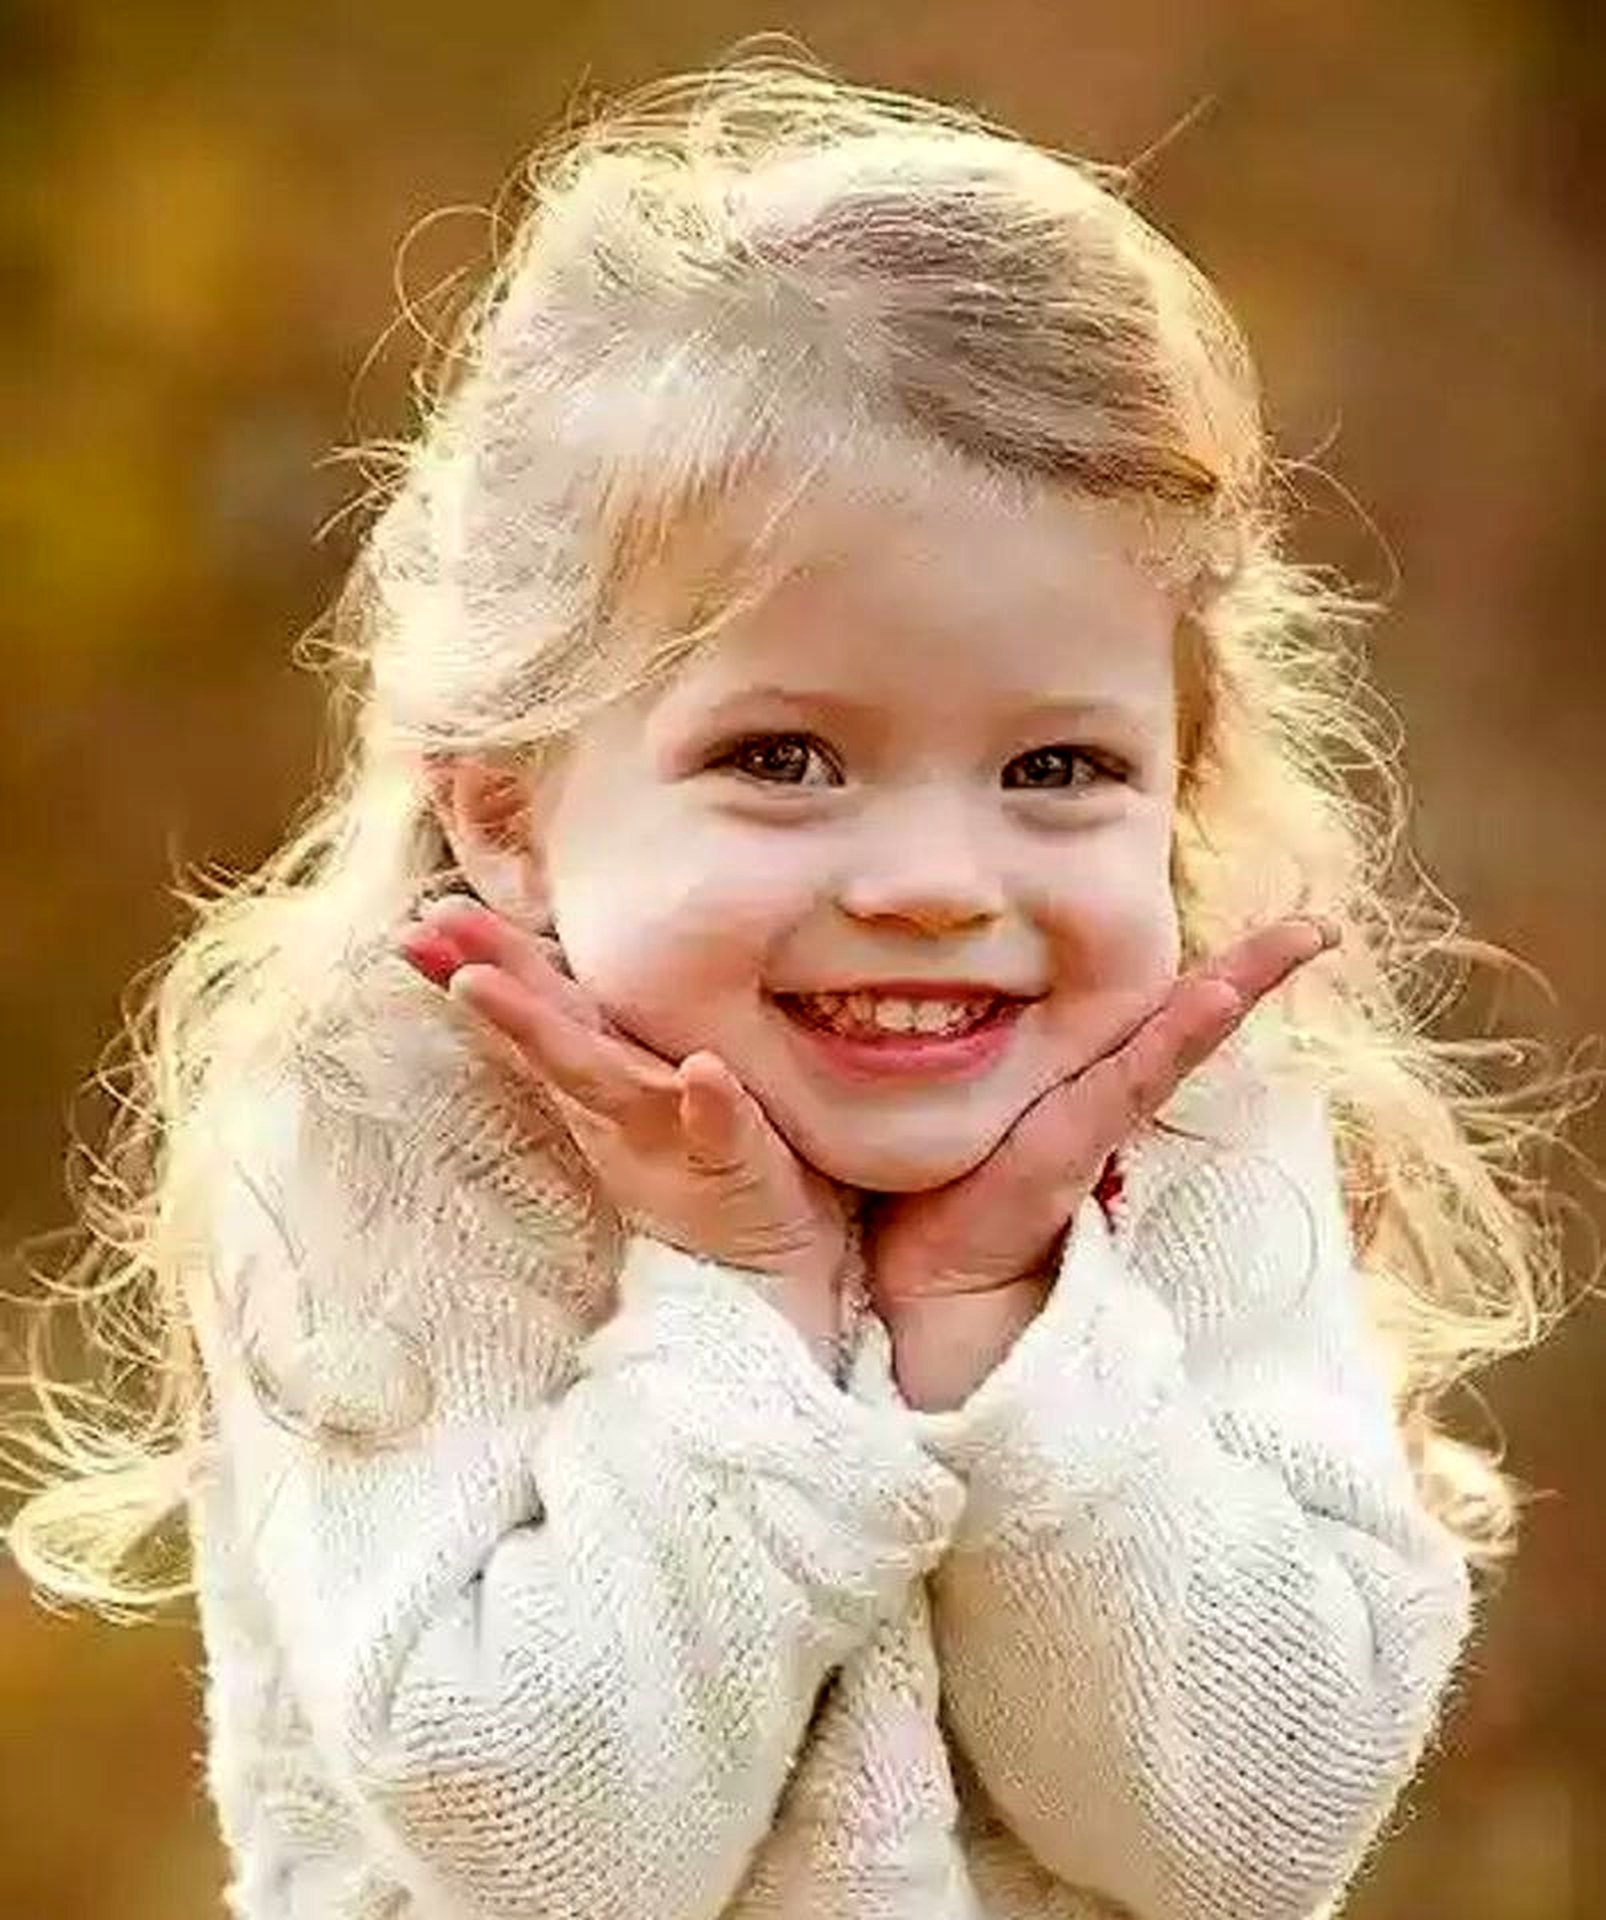 Улыбка детей самое. Ребенок улыбается. Девочка смеется. Девочка улыбается. Красивые детские улыбки.